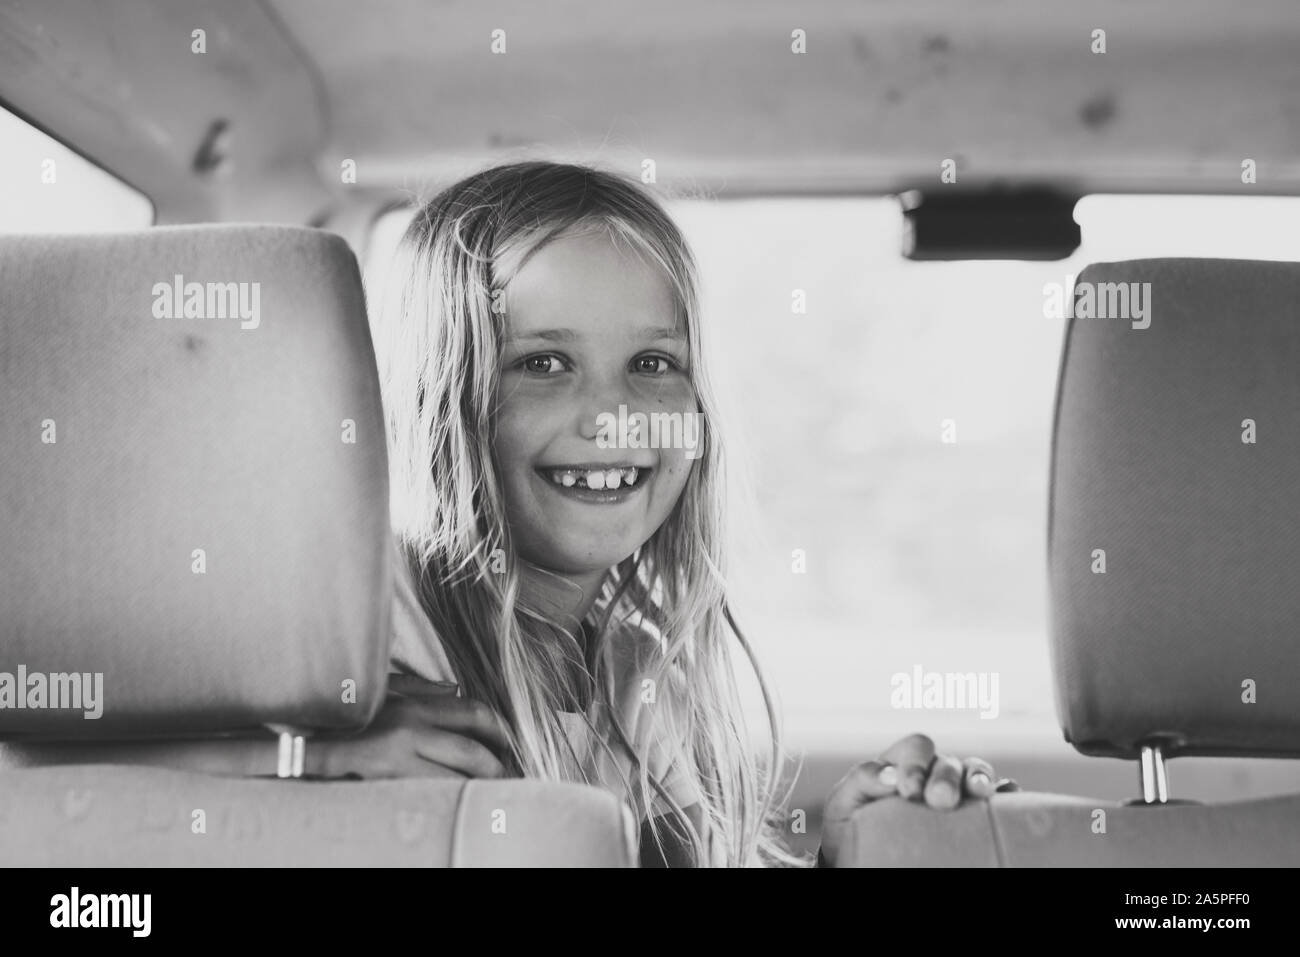 Smiling girl in car Stock Photo